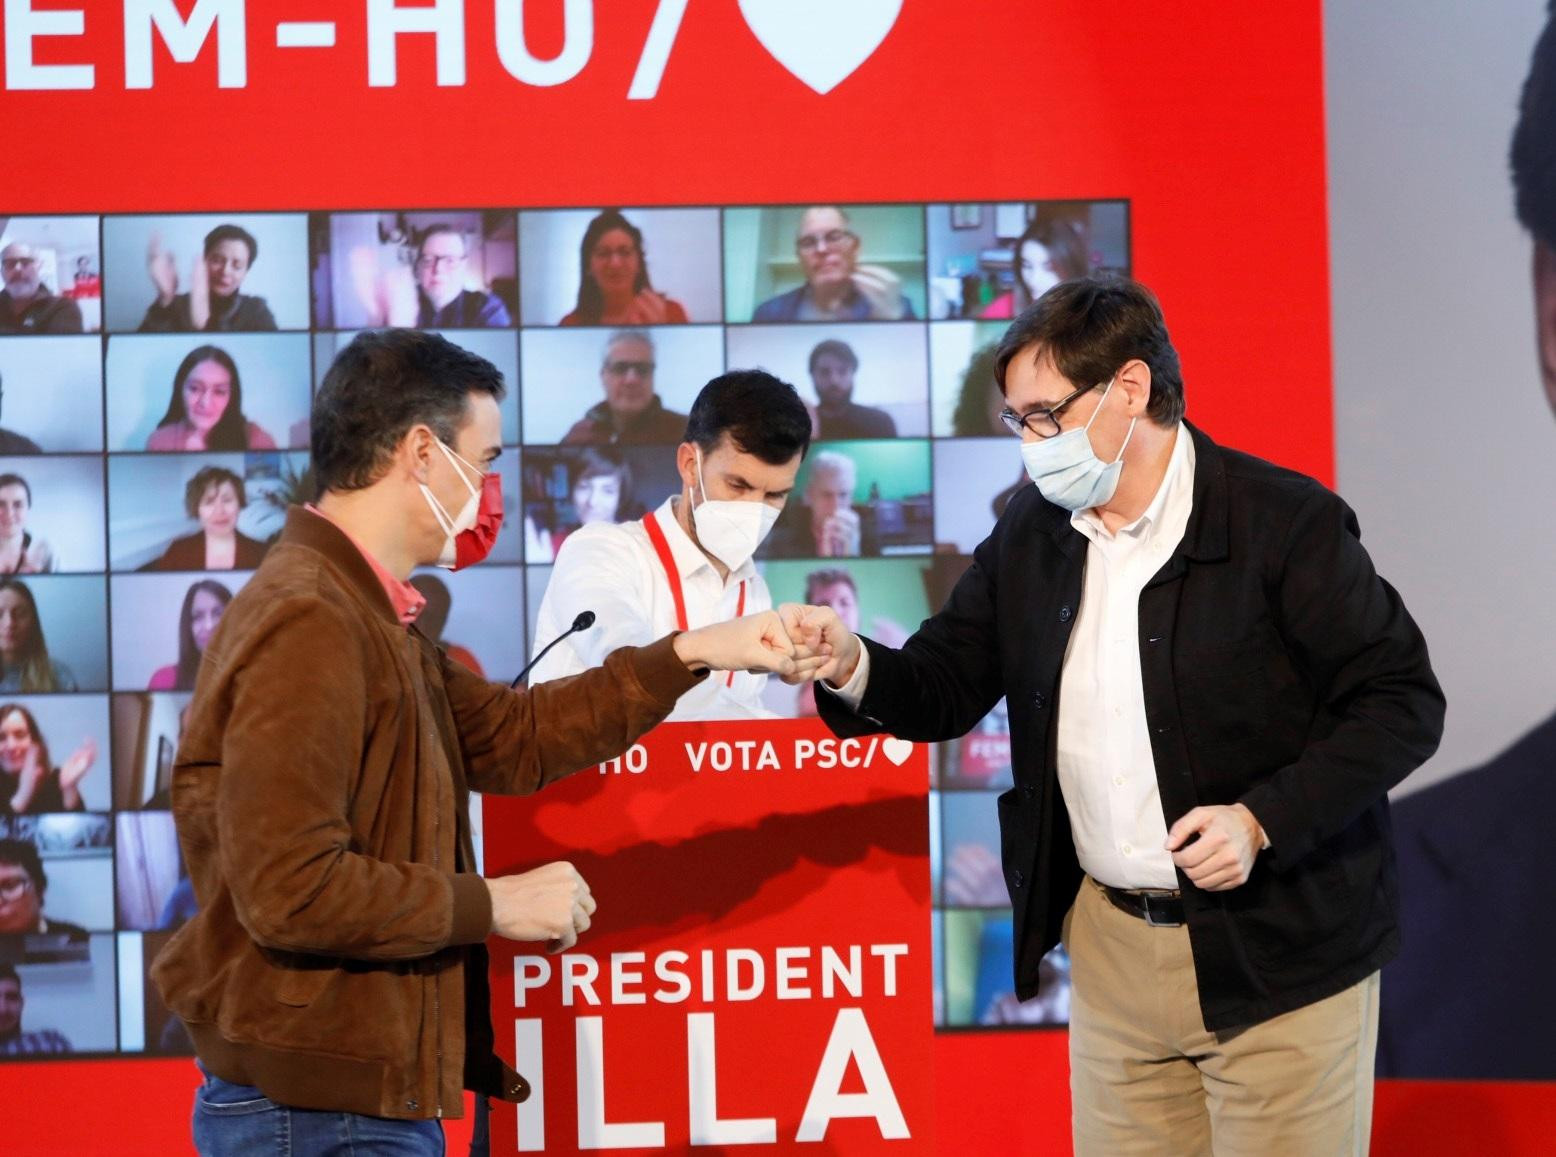 El candidato del PSC, Salvador Illa, y el líder del PSOE, Pedro Sánchez, durante un acto de campaña celebrado este domingo en Girona / PSC